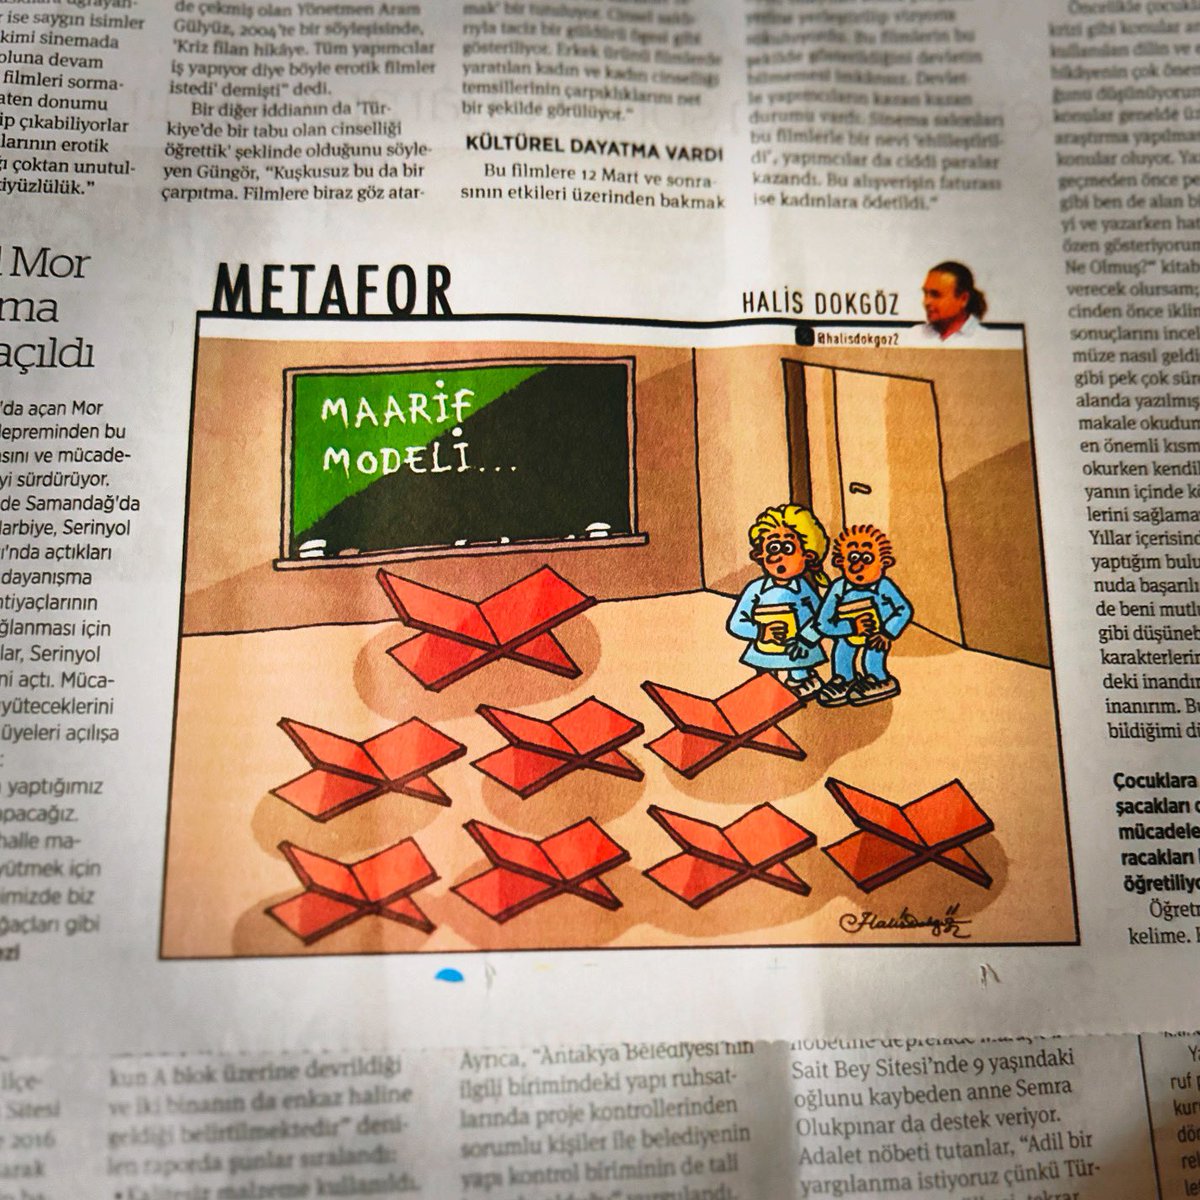 Gazeteye dokunarak okumak… Maarif Modeli! BirGün Gazetesi @BirGun_Gazetesi Metafor köşesinde “Maarif Modeli!” var… birgun.net/makale/halis-d… #metafor #karikatür #BirGün